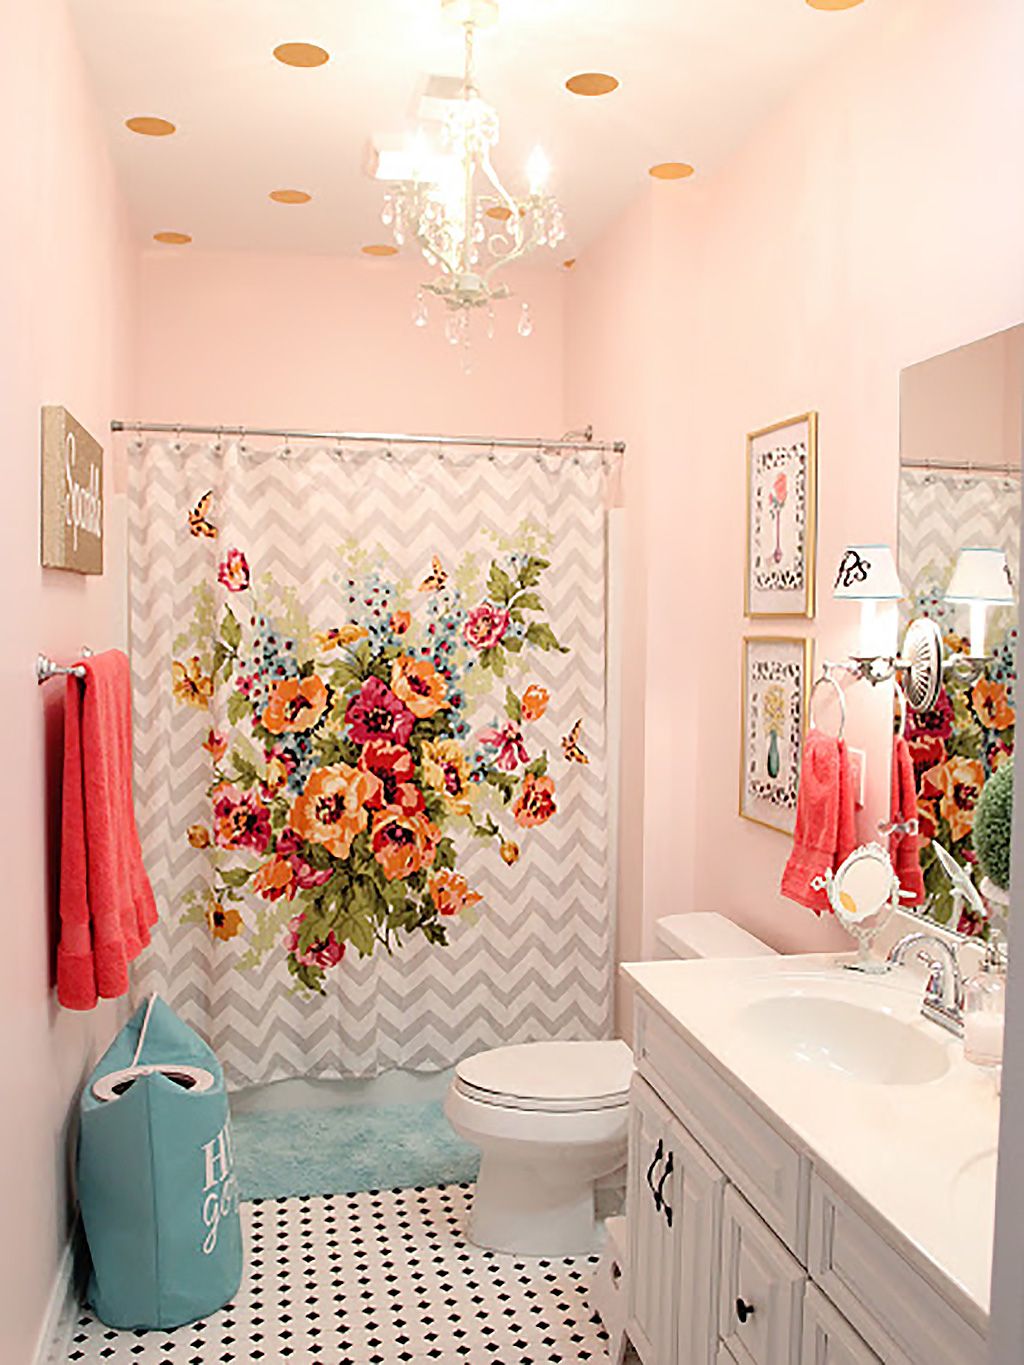 Decoración baños: ¿De qué color pintar y decorar el cuarto de baño? - Foto 1